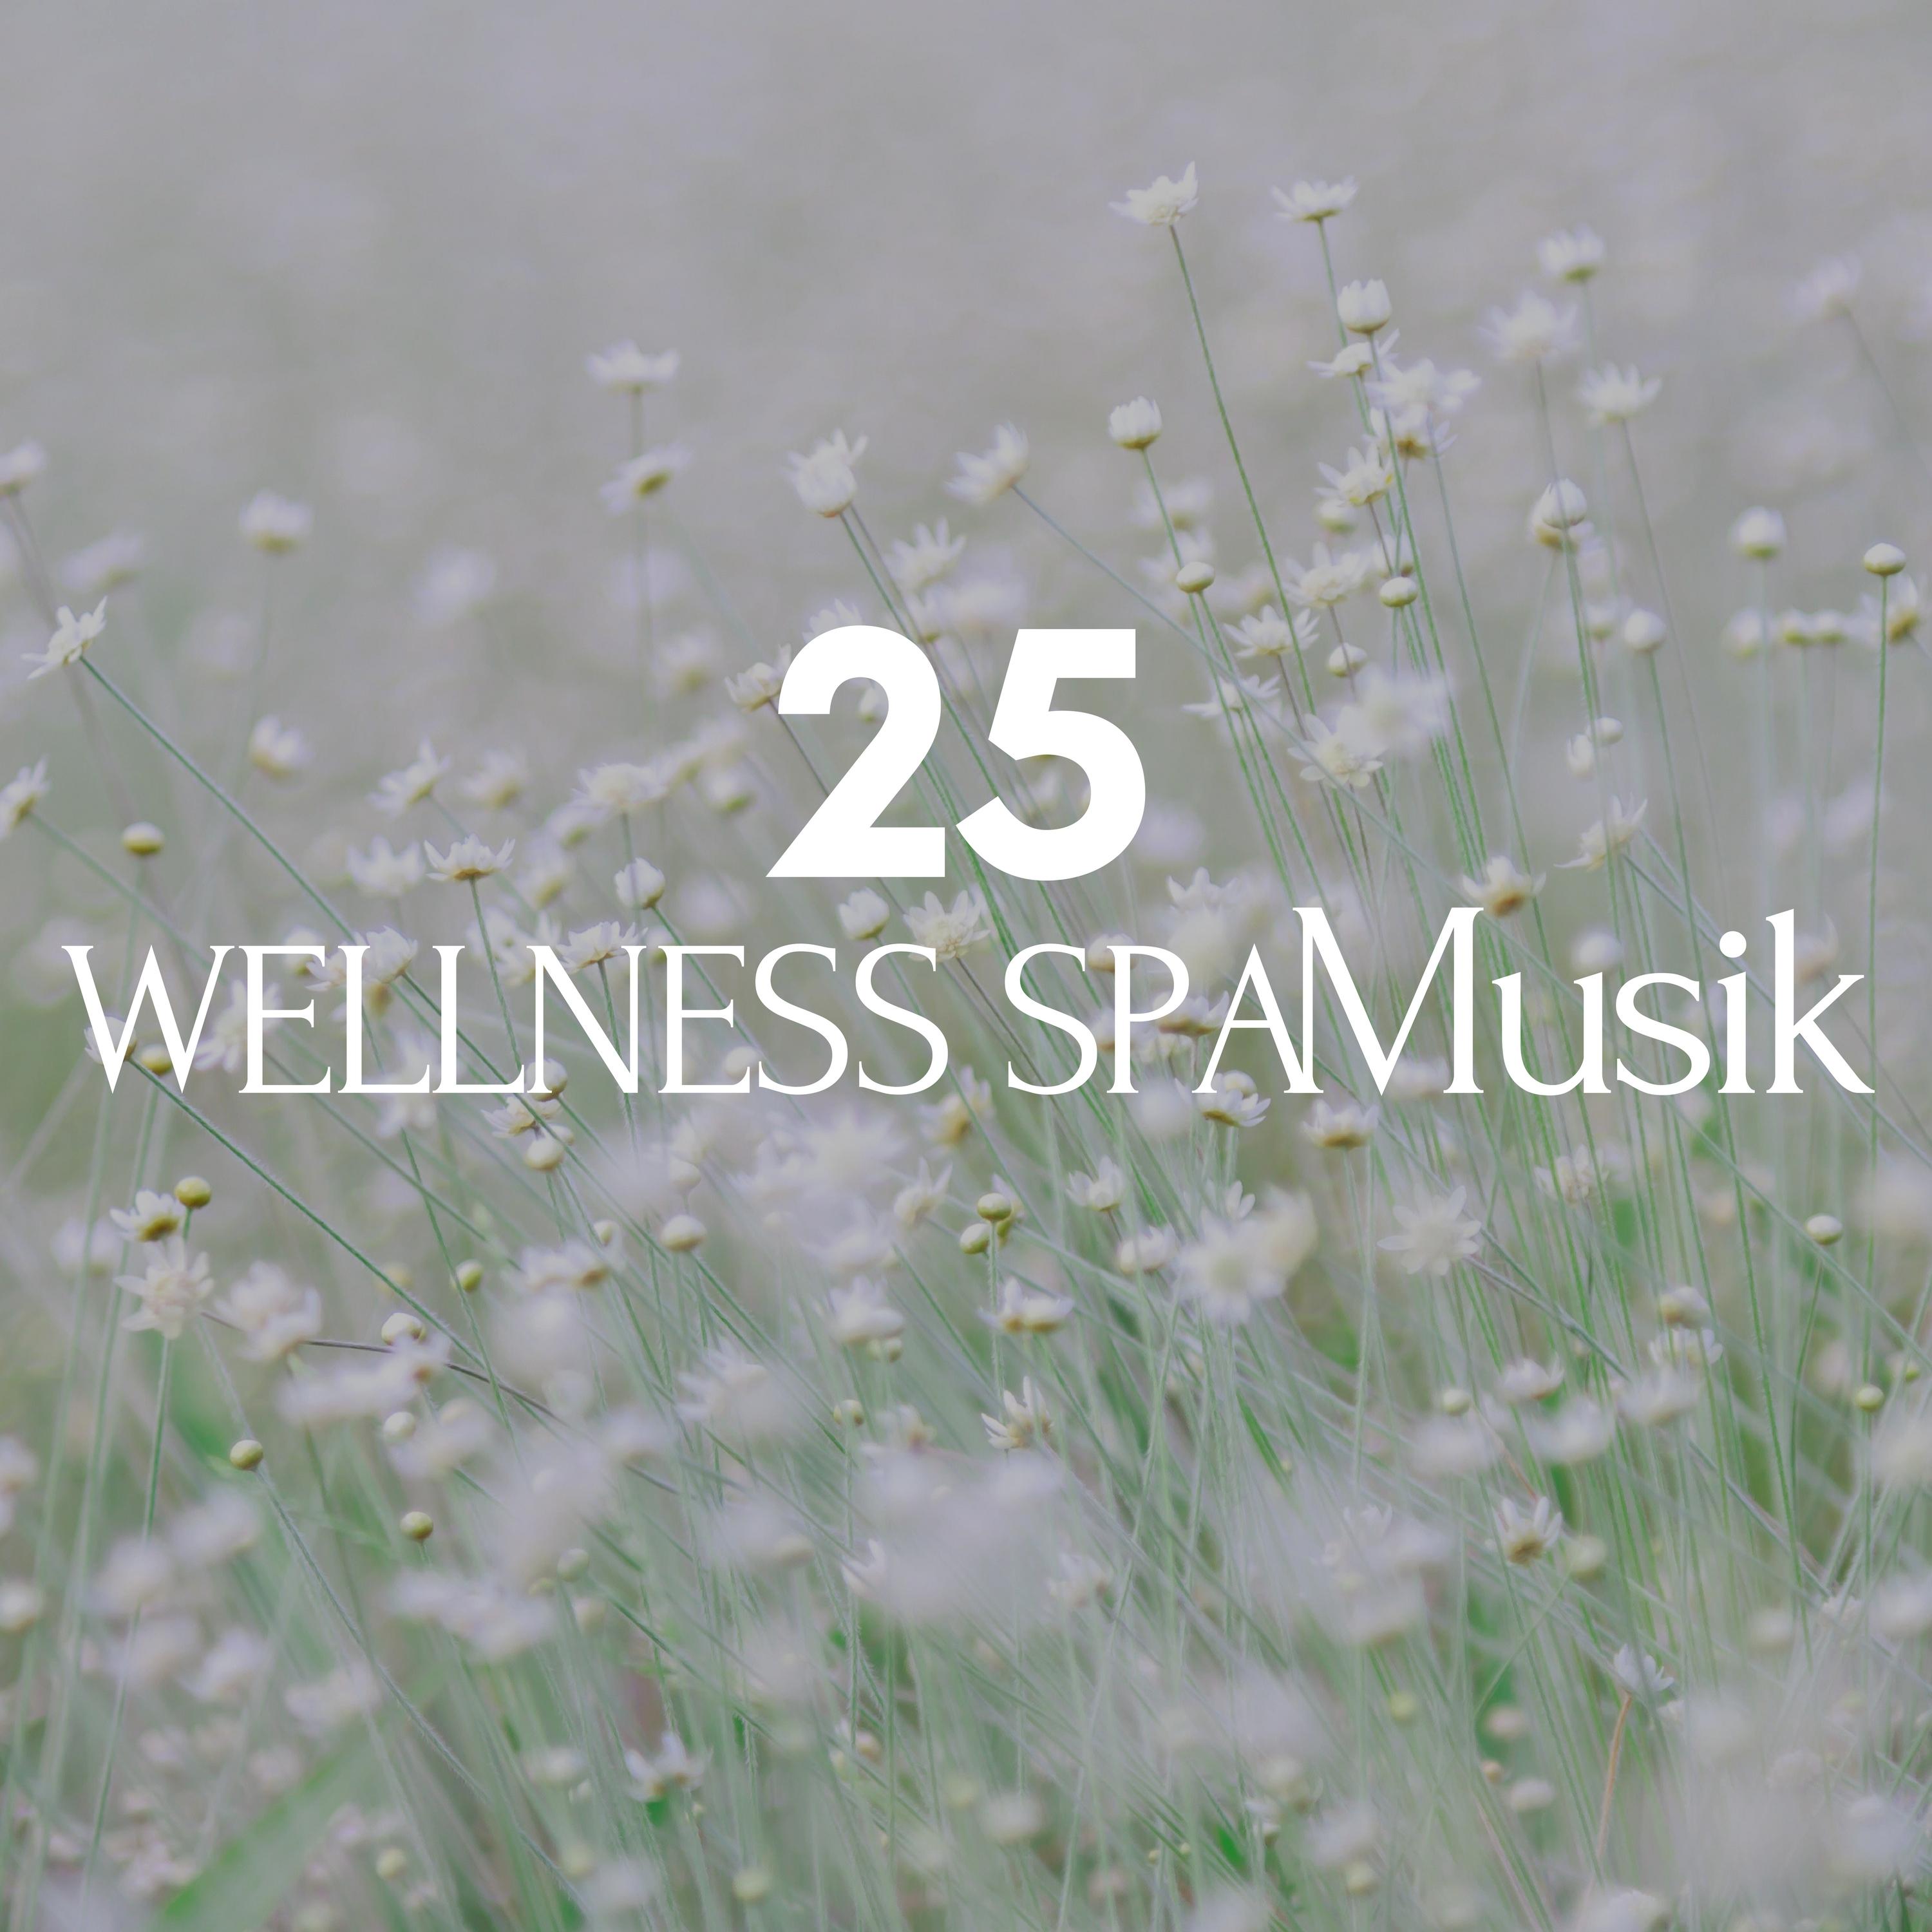 25 Wellness Spa Musik  Hintergrundmusik, Entspannungsmusik  Musik fü r Tiefenentspannung